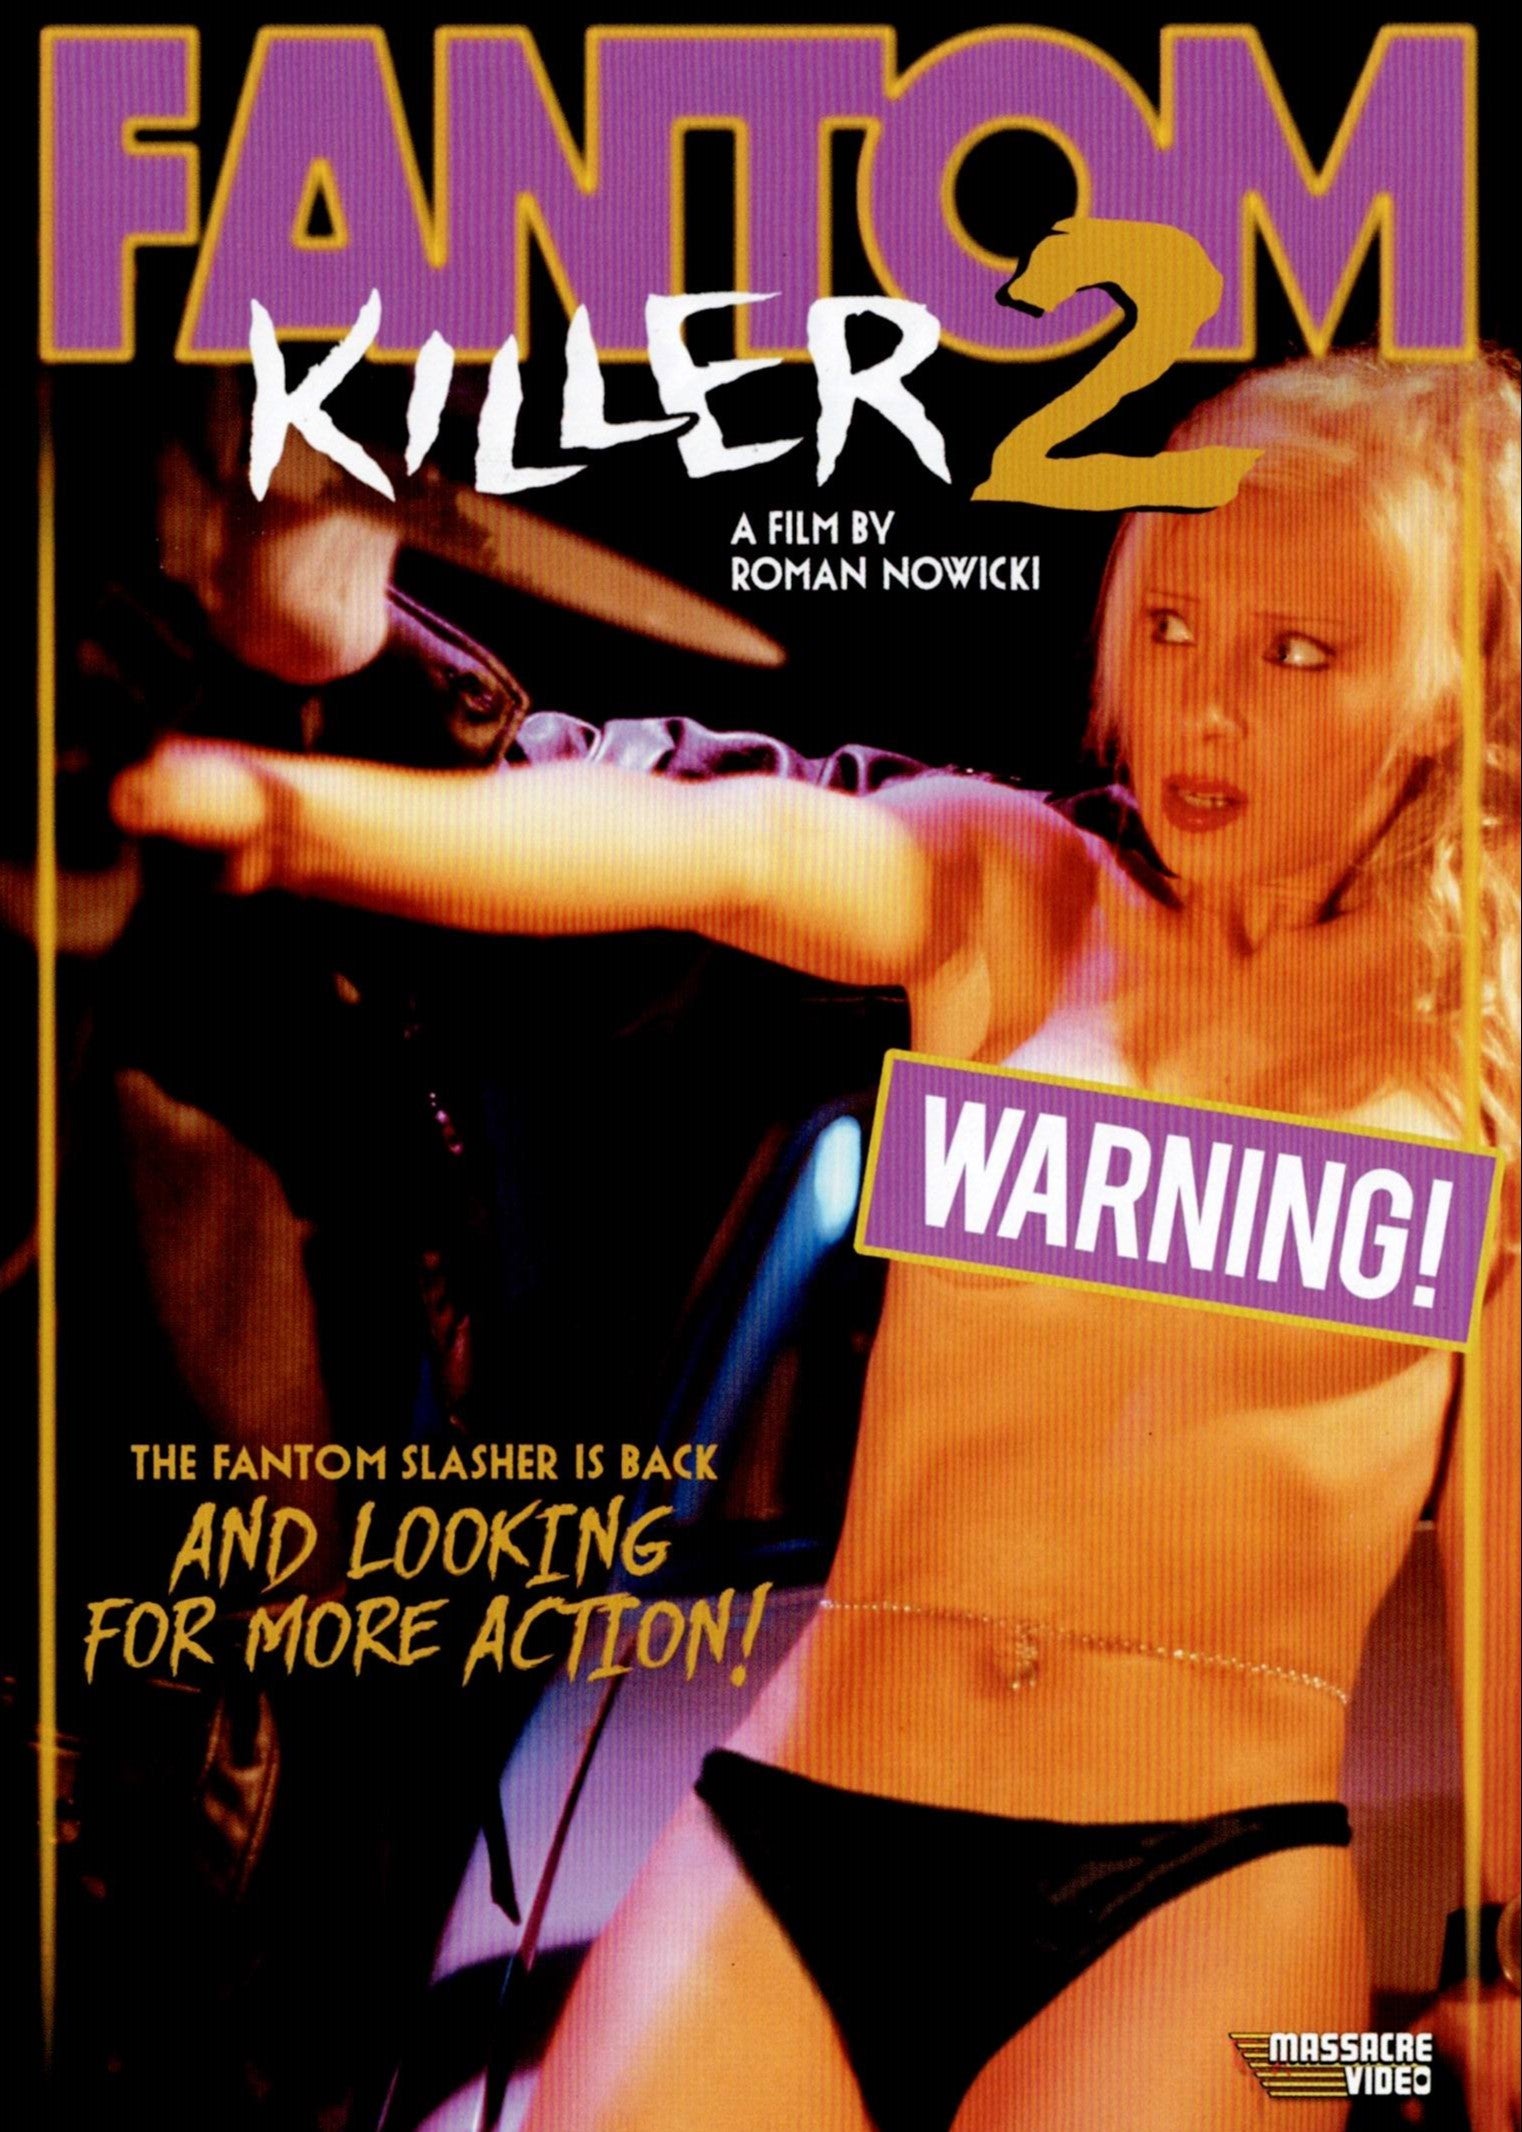 FANTOM KILLER 2 DVD